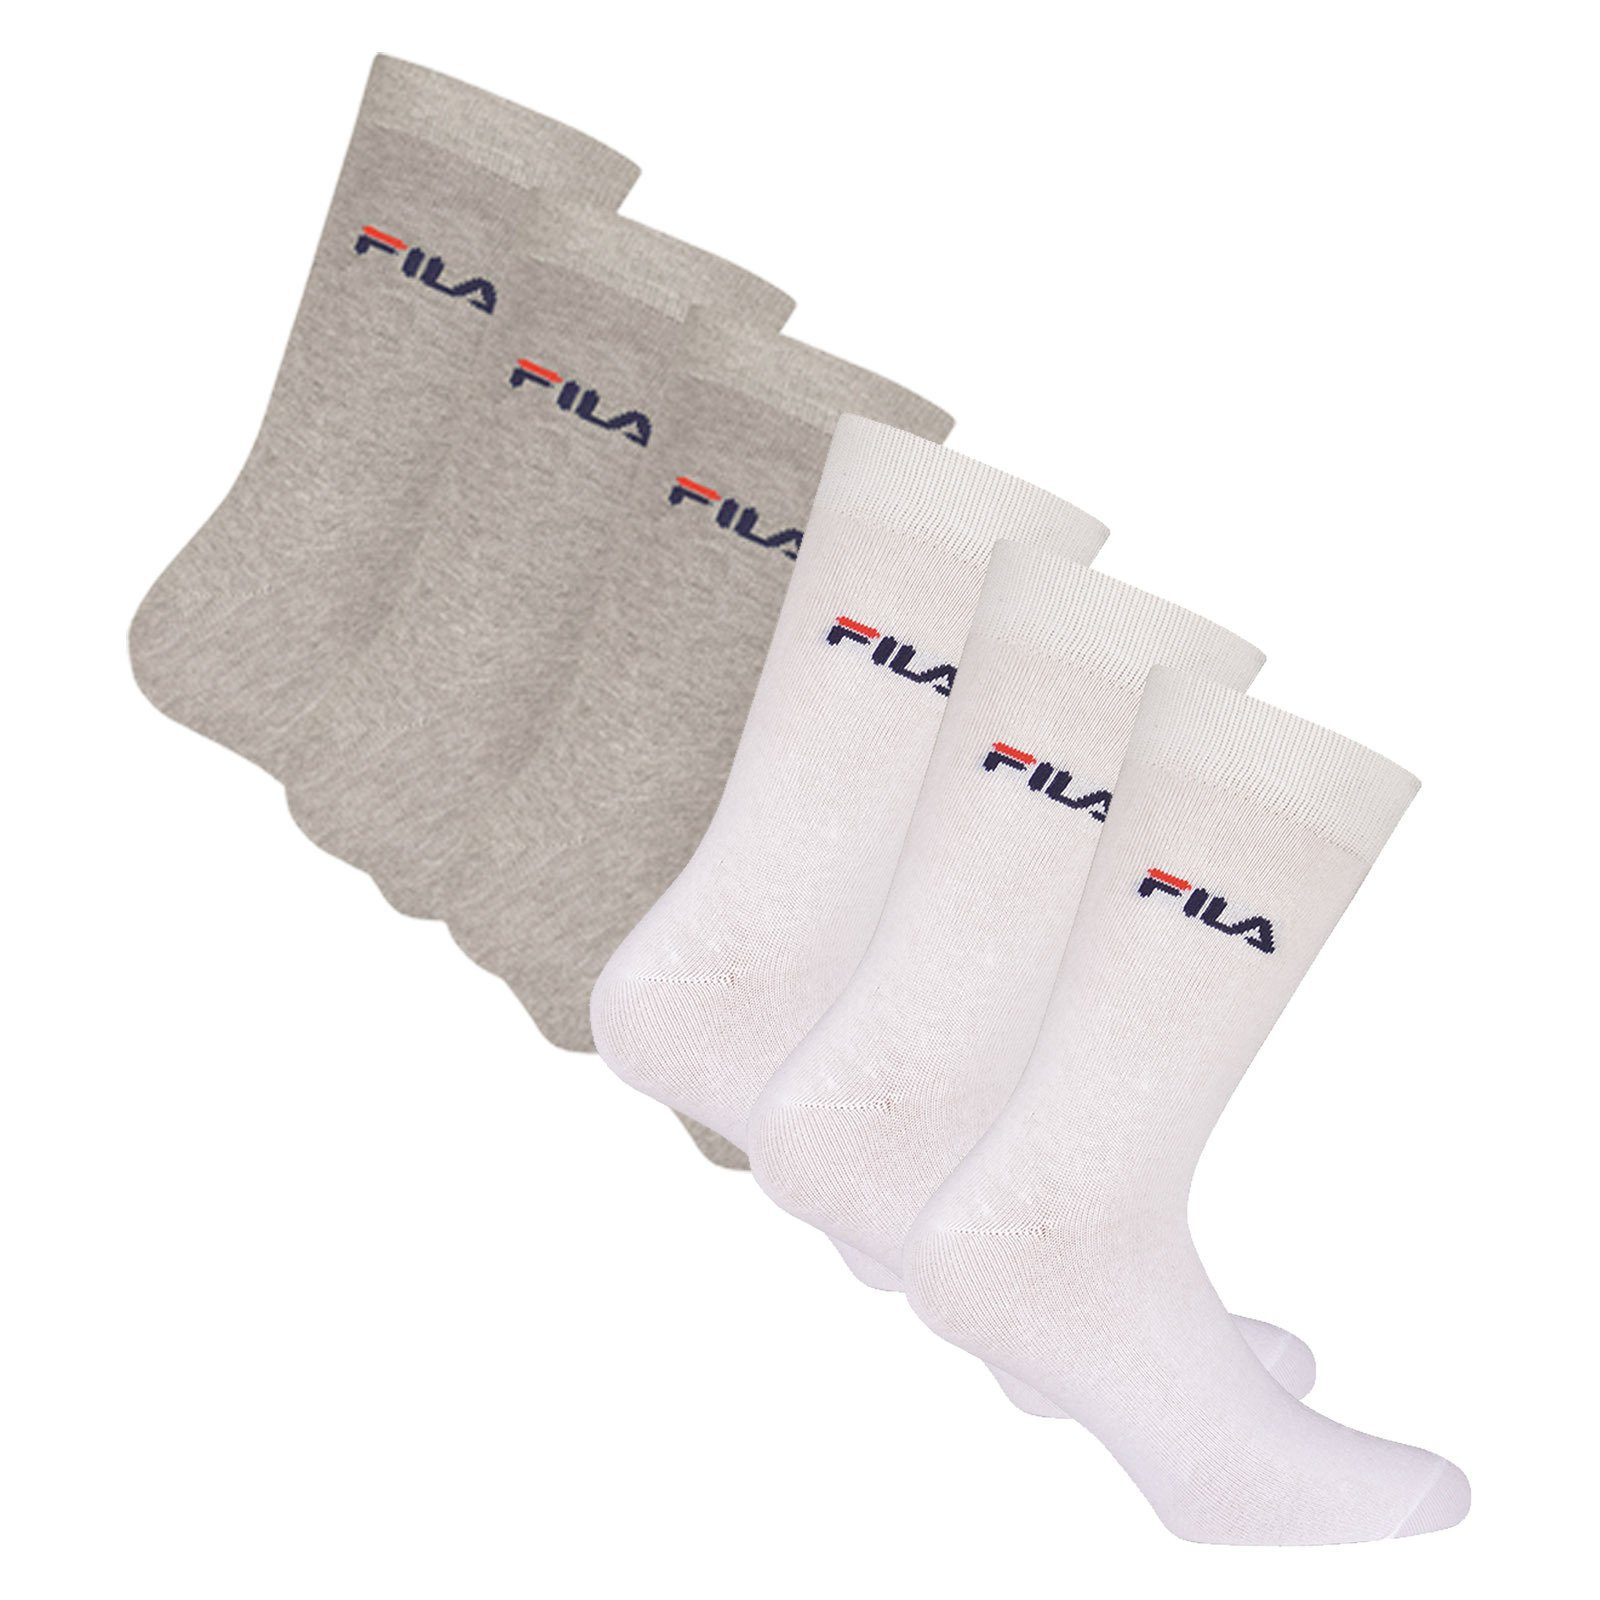 Fila Sportsocken Unisex beste Pack Qualität Crew Socken, Strümpfe, Hoher - Tragekomfort, Socks, 6er